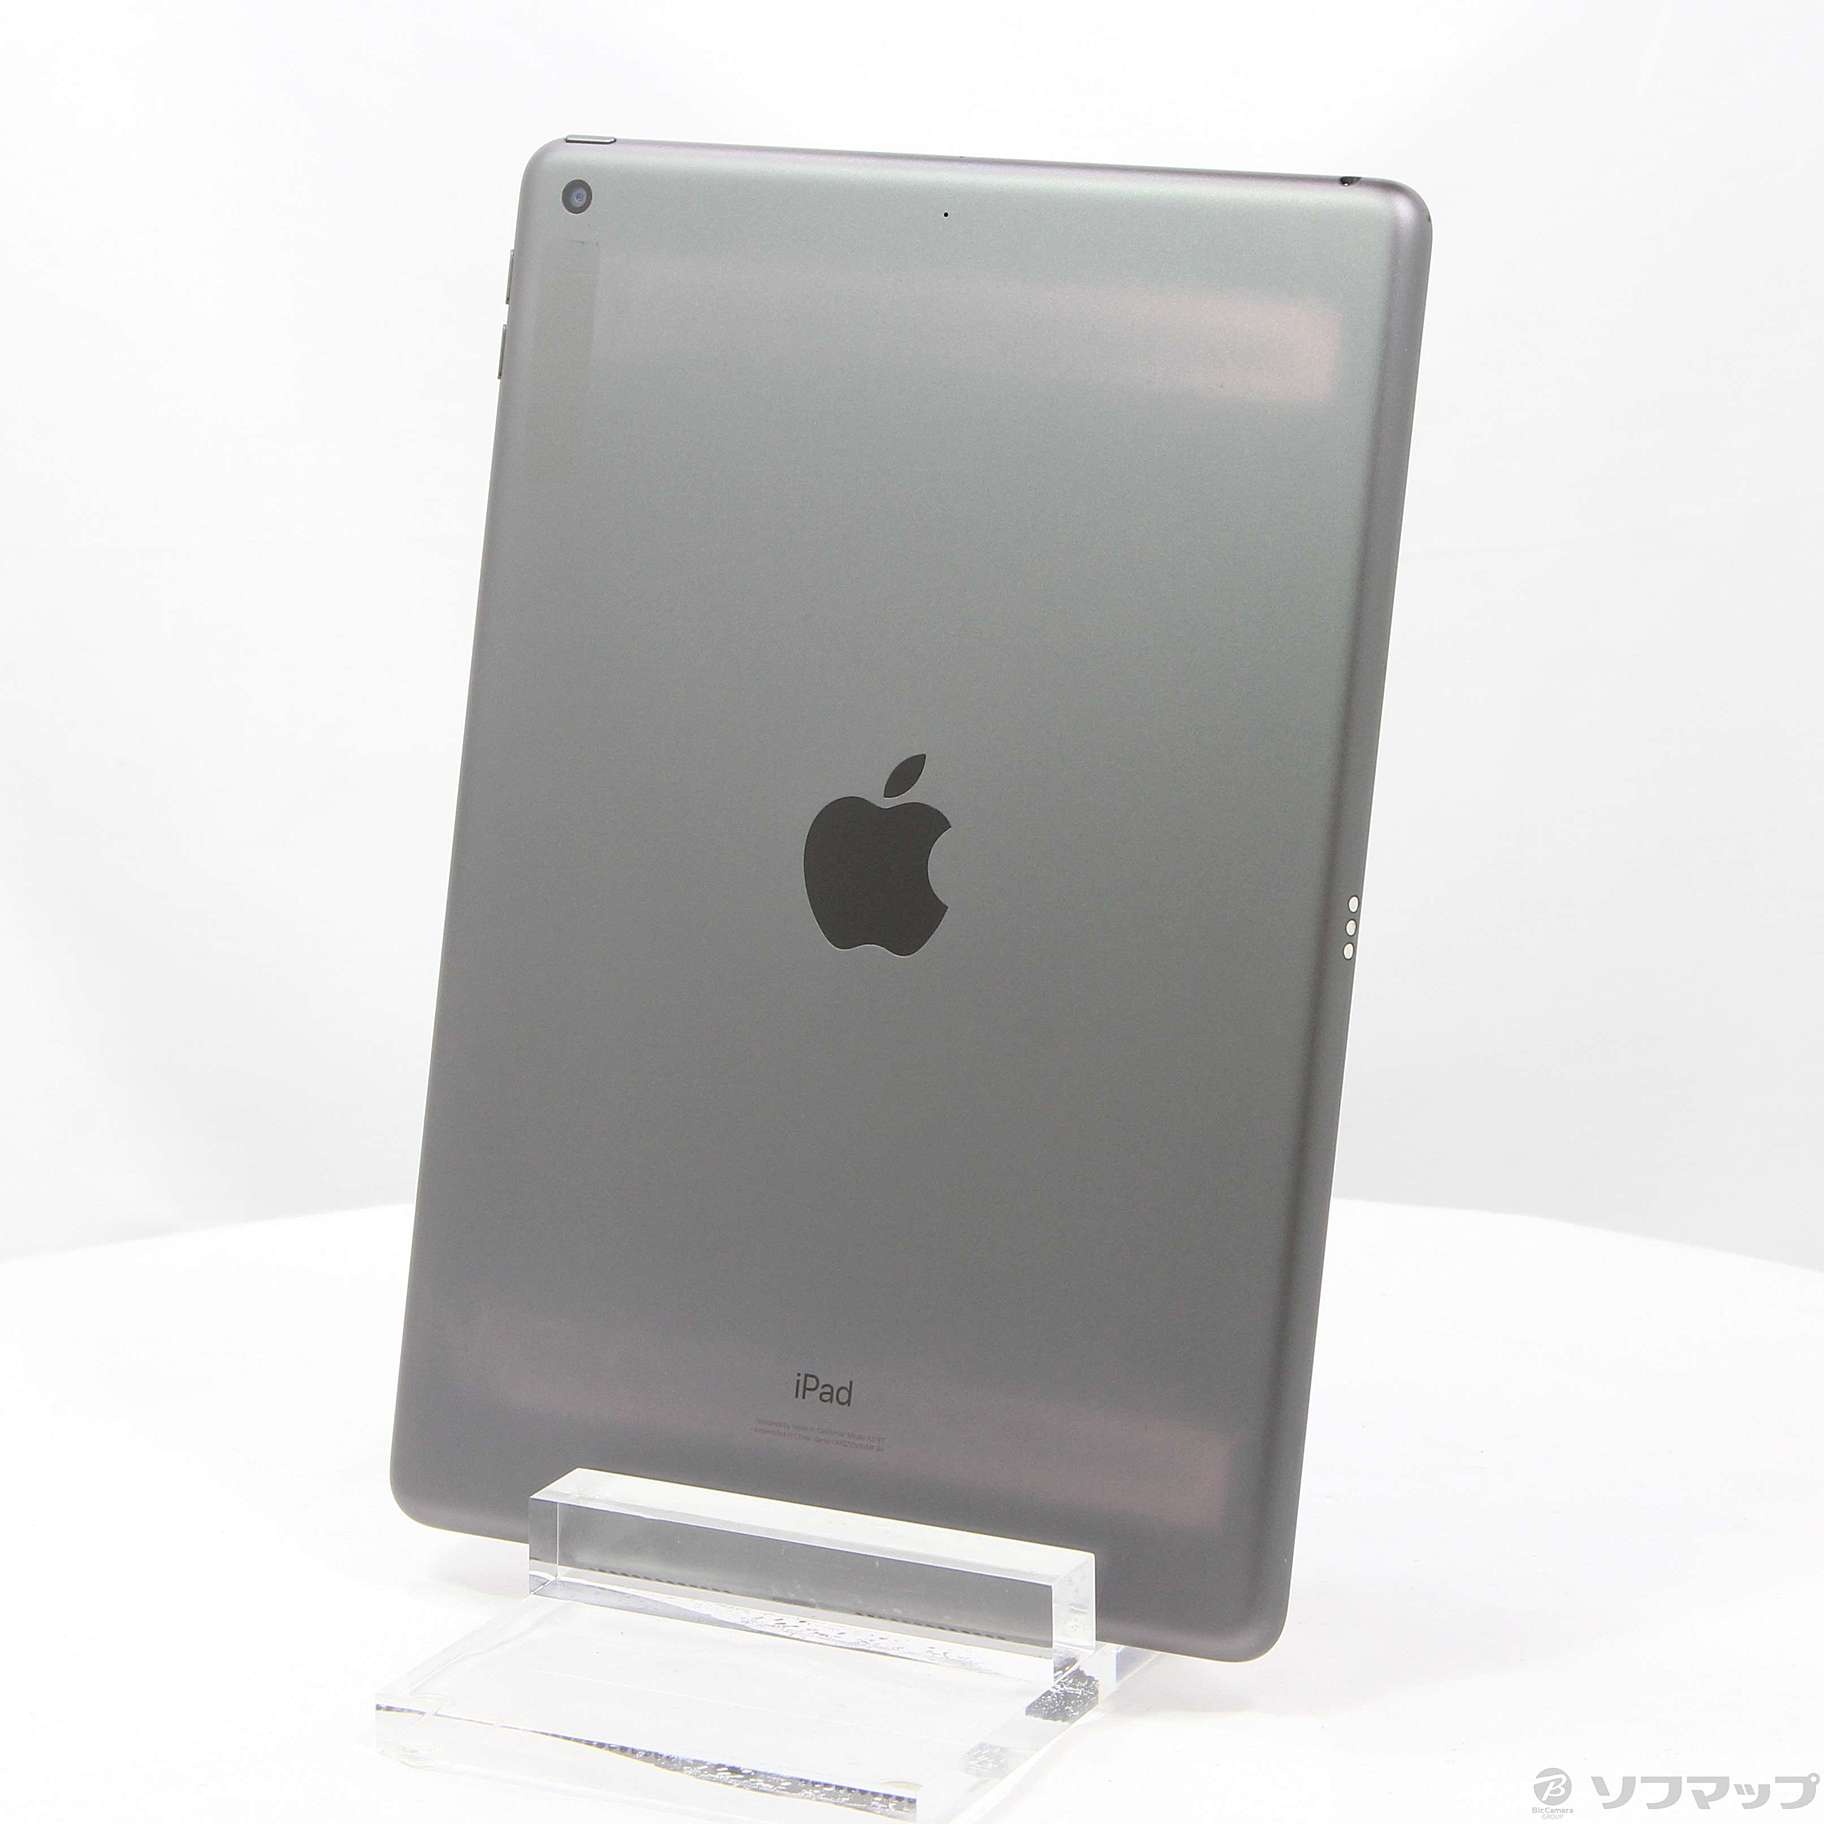 【楽天市場】iPad MW742J/A Space Gray 新品未開封 タブレット